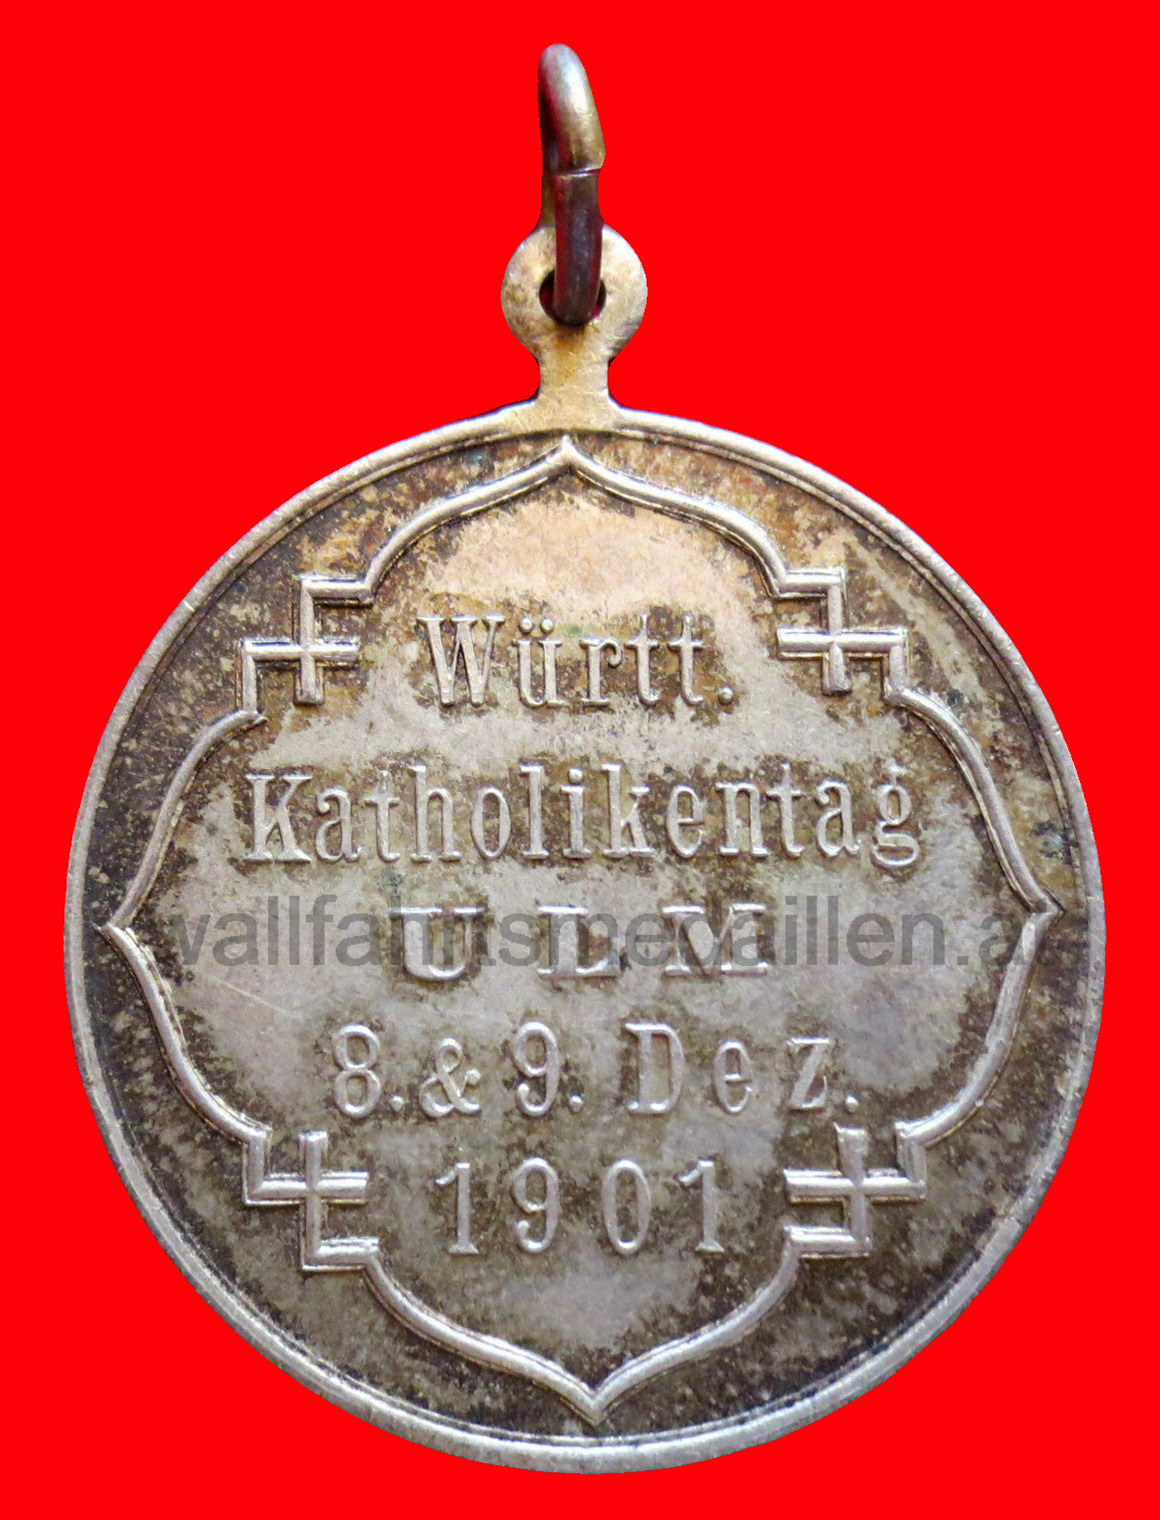 Katholikentag Ulm 1901